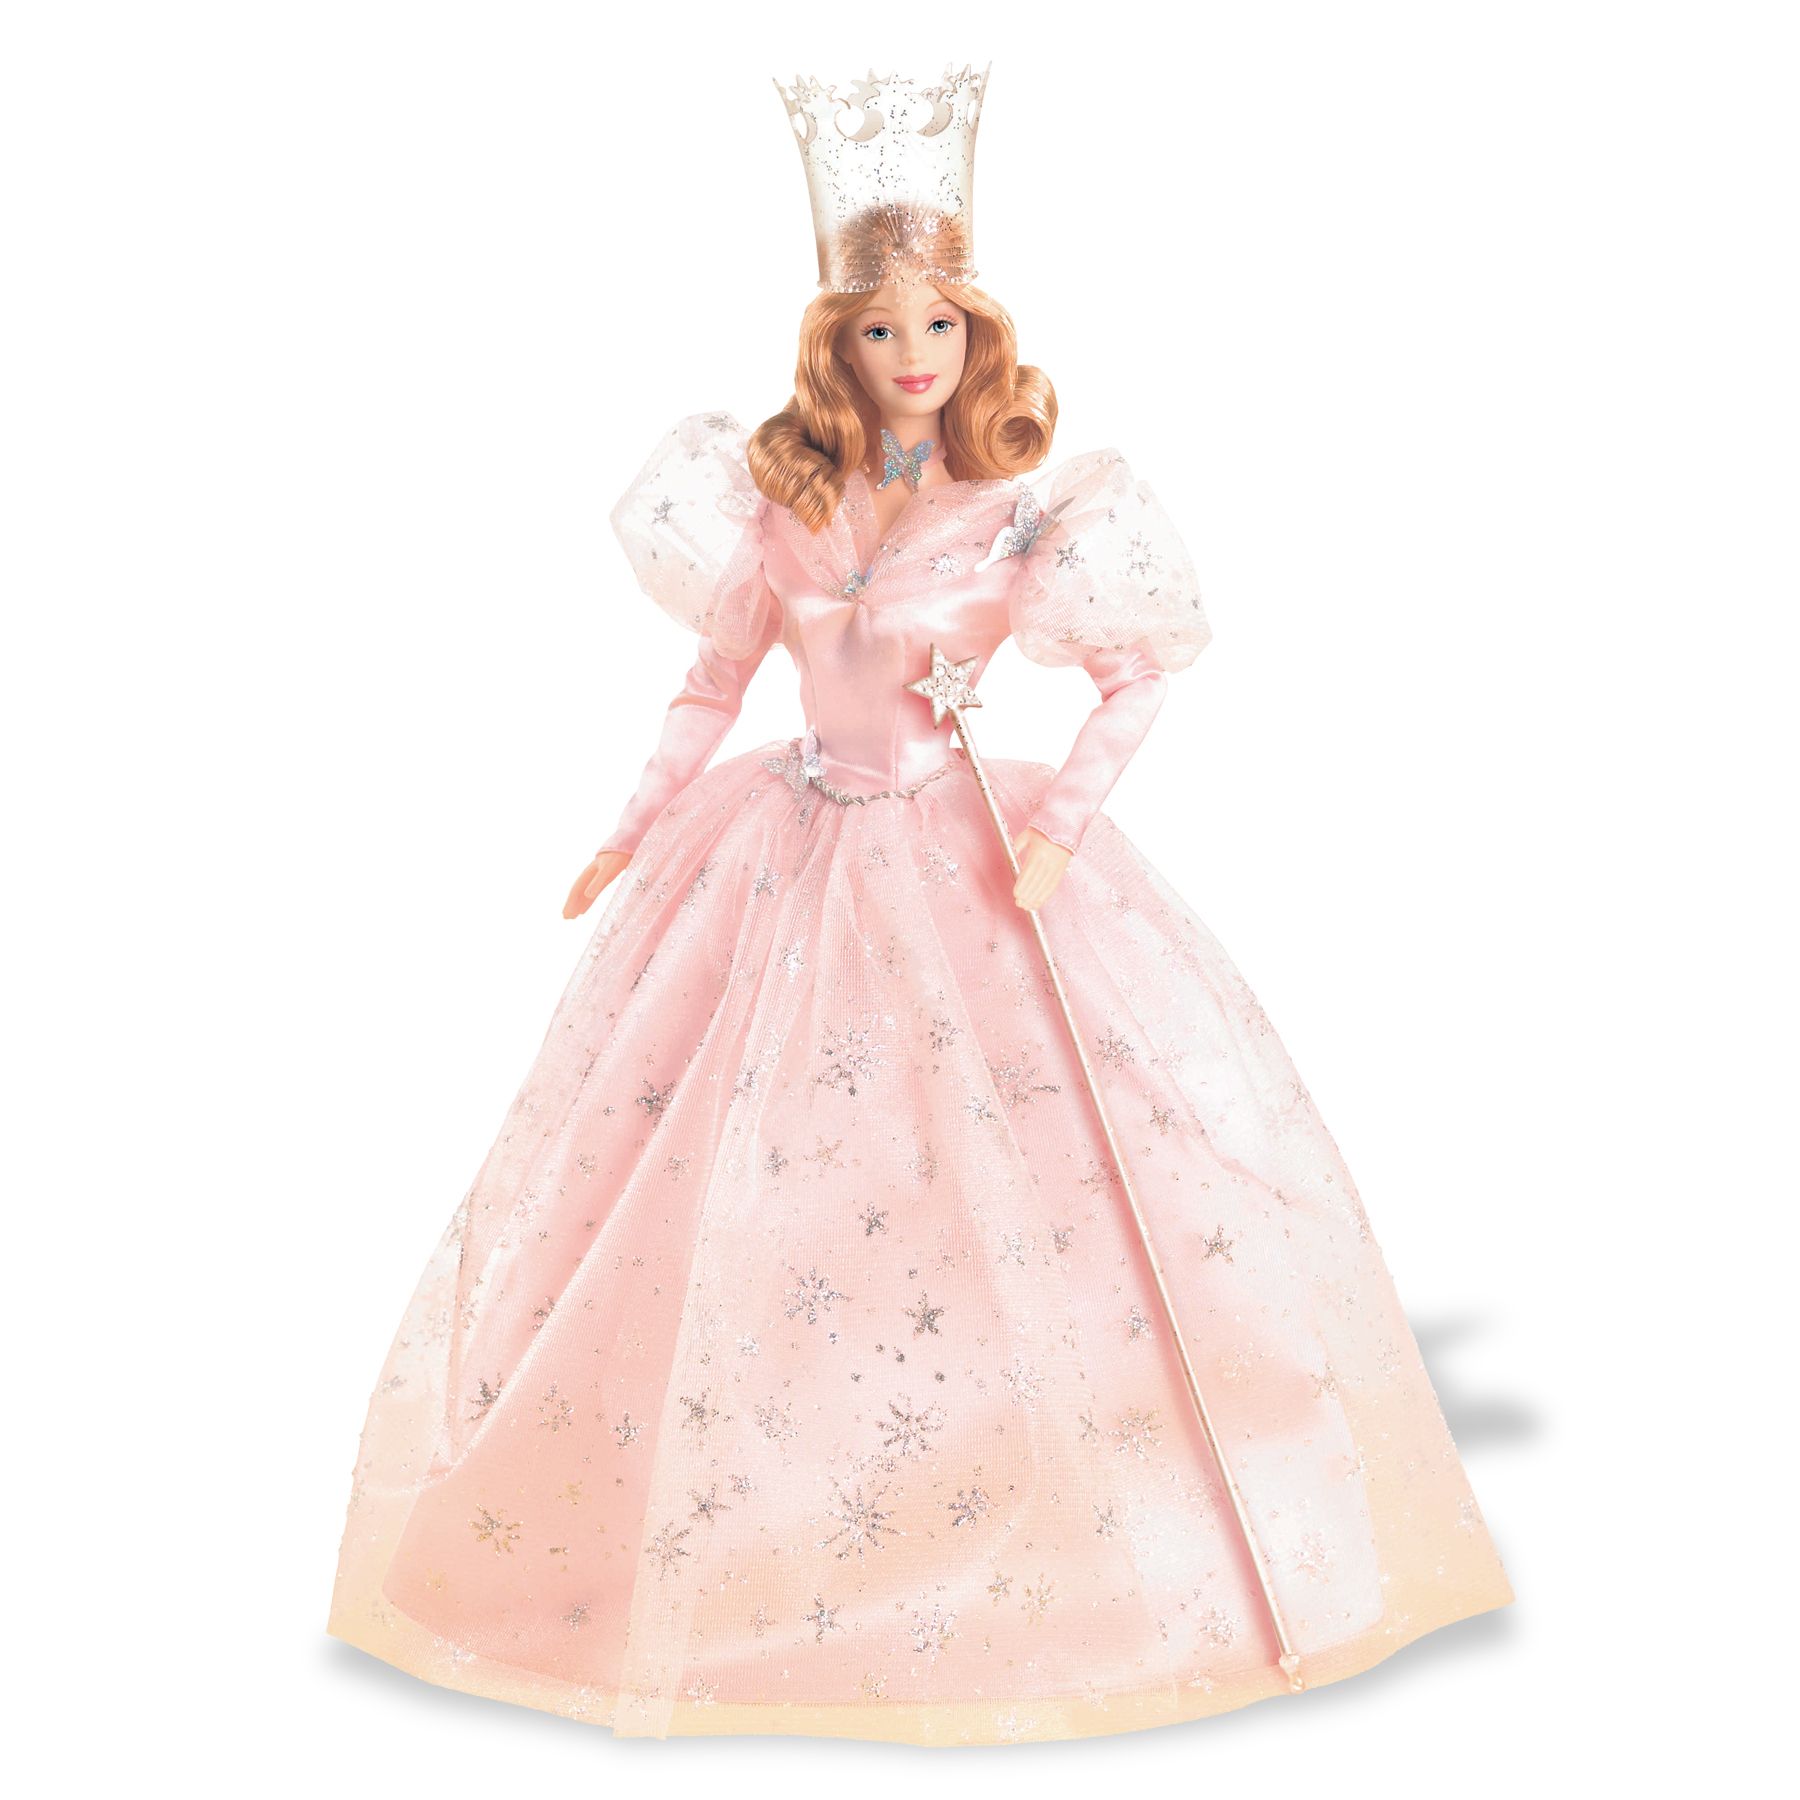 Barbie - Wizard of Oz - Glinda the Good Witch Doll